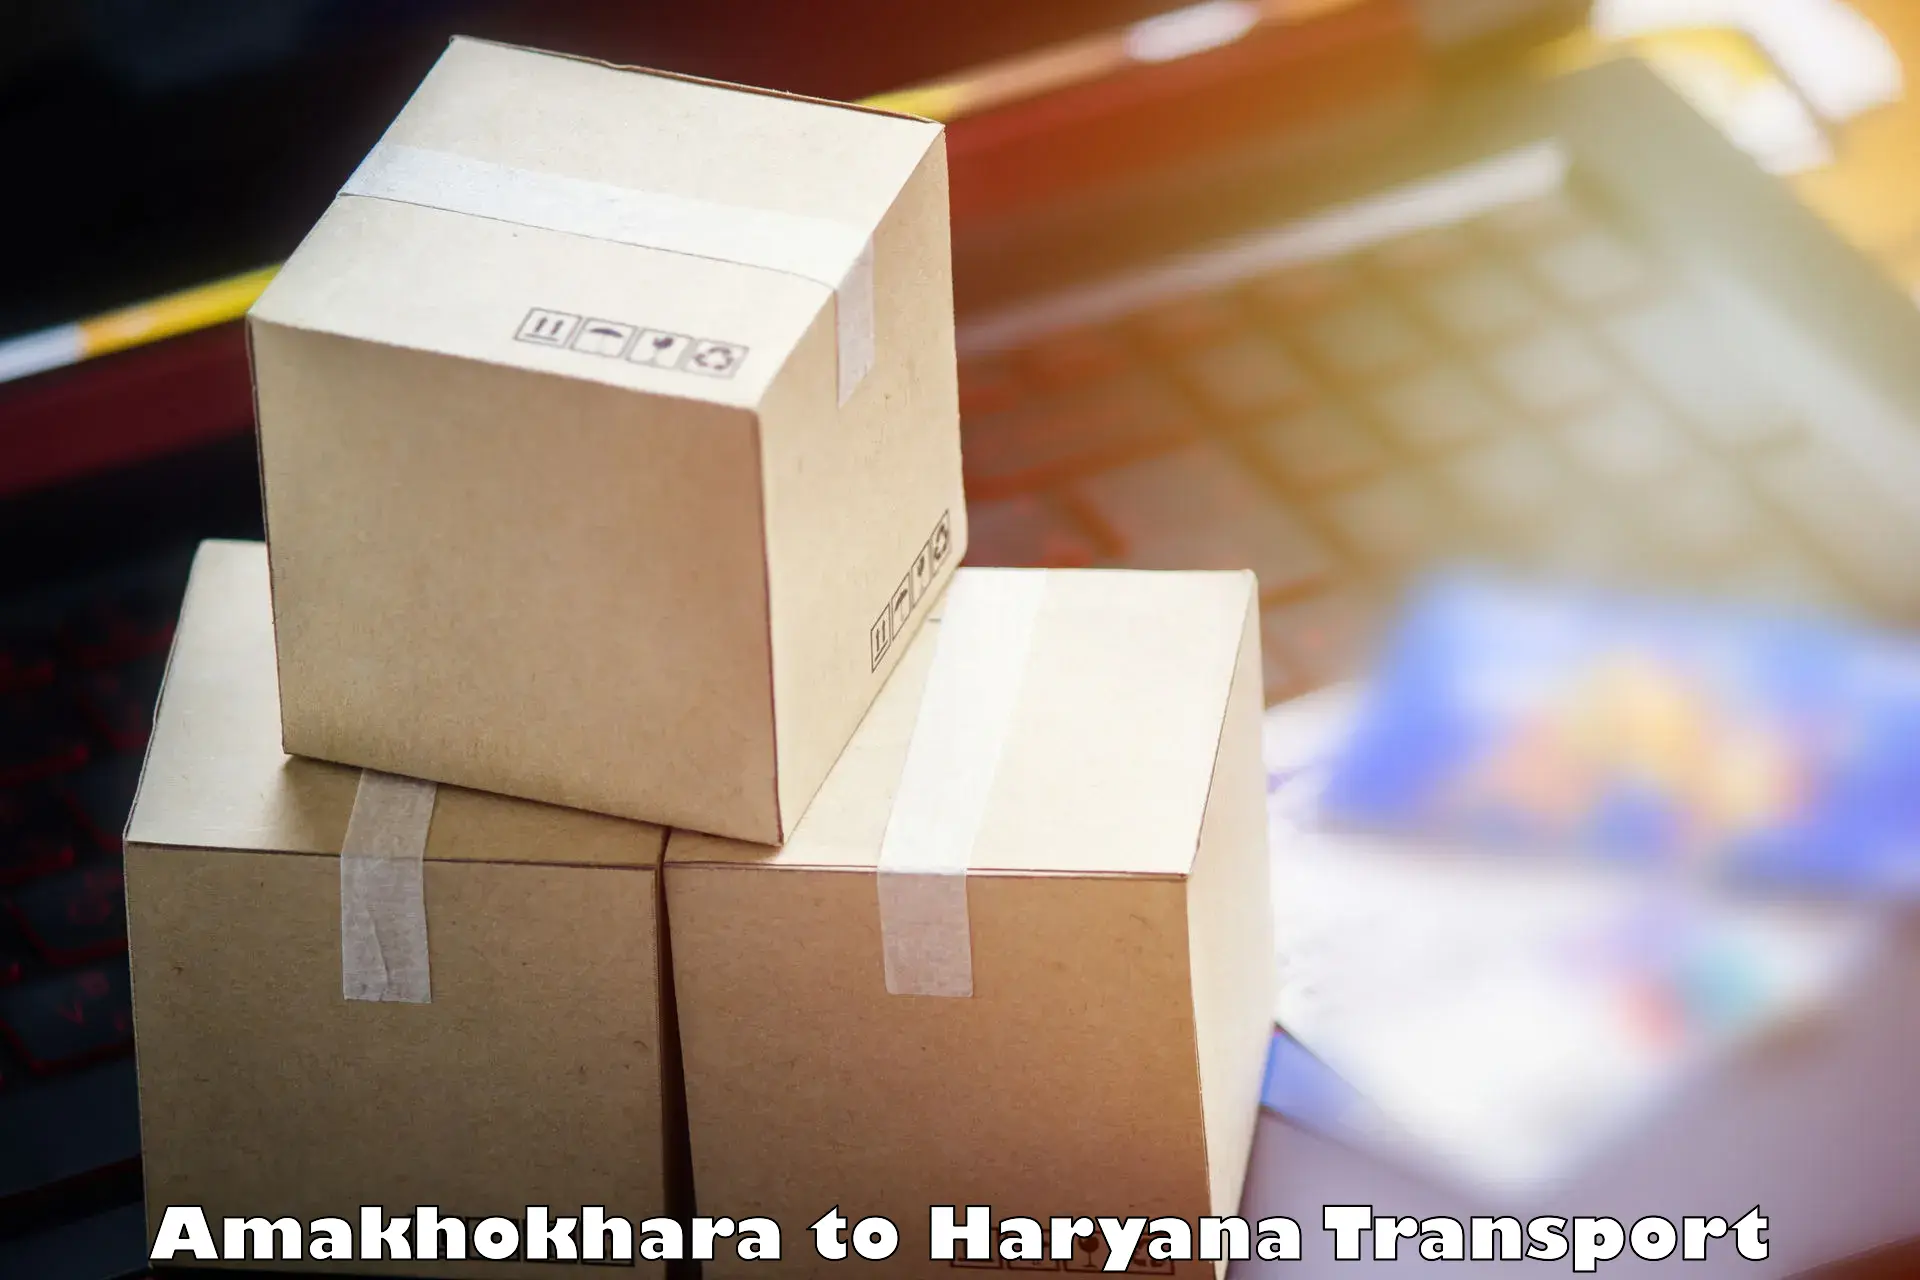 Logistics transportation services Amakhokhara to Charkhi Dadri